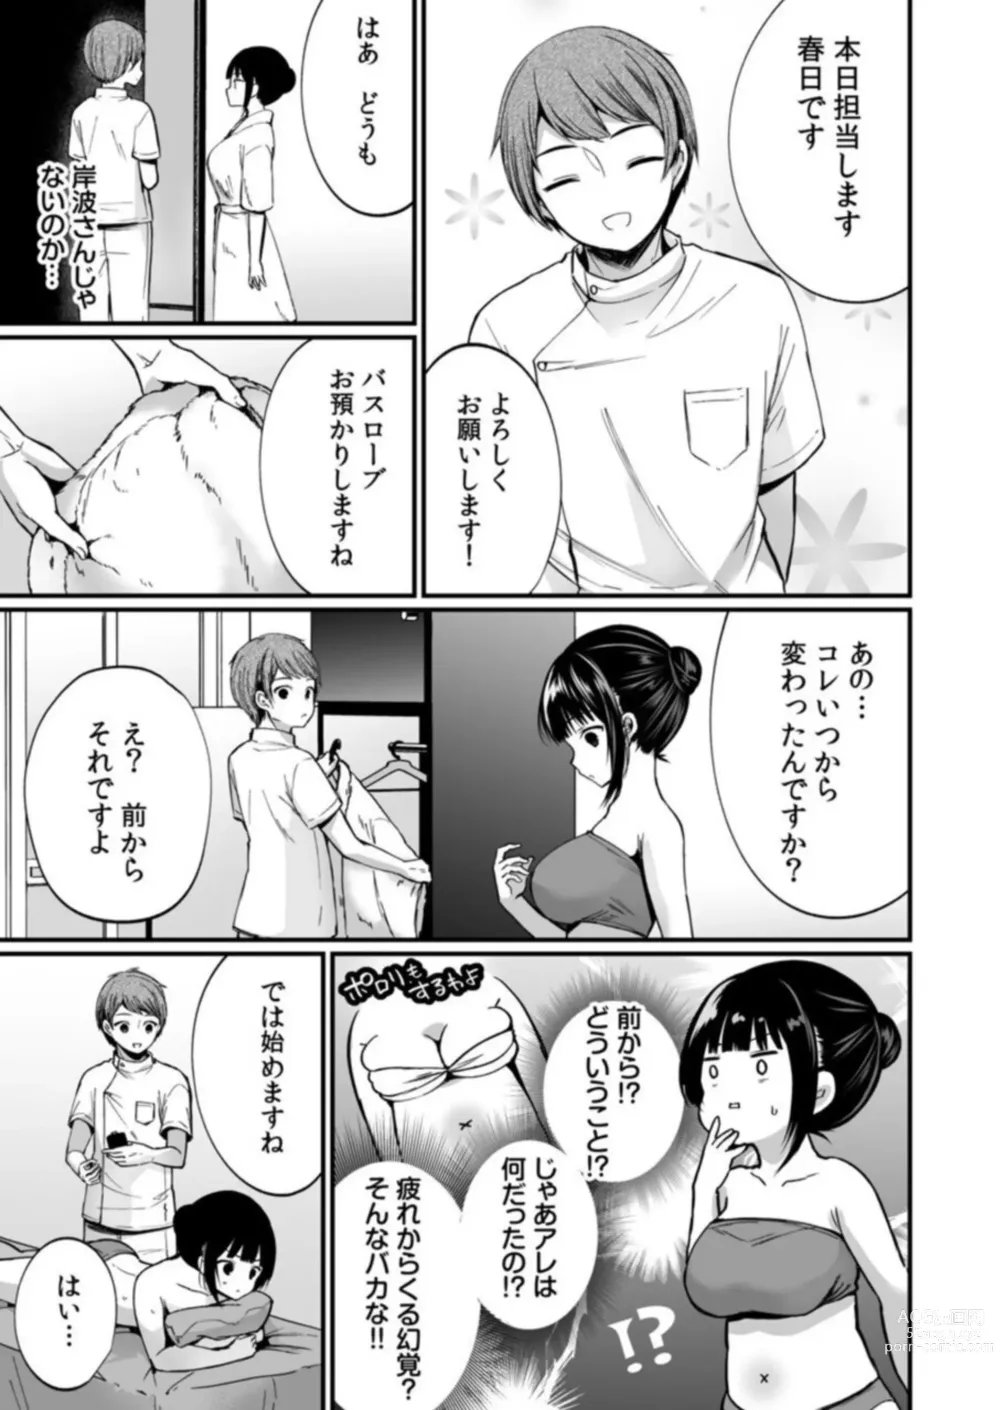 Page 7 of manga Ikasaresugite Chousa Murii...!